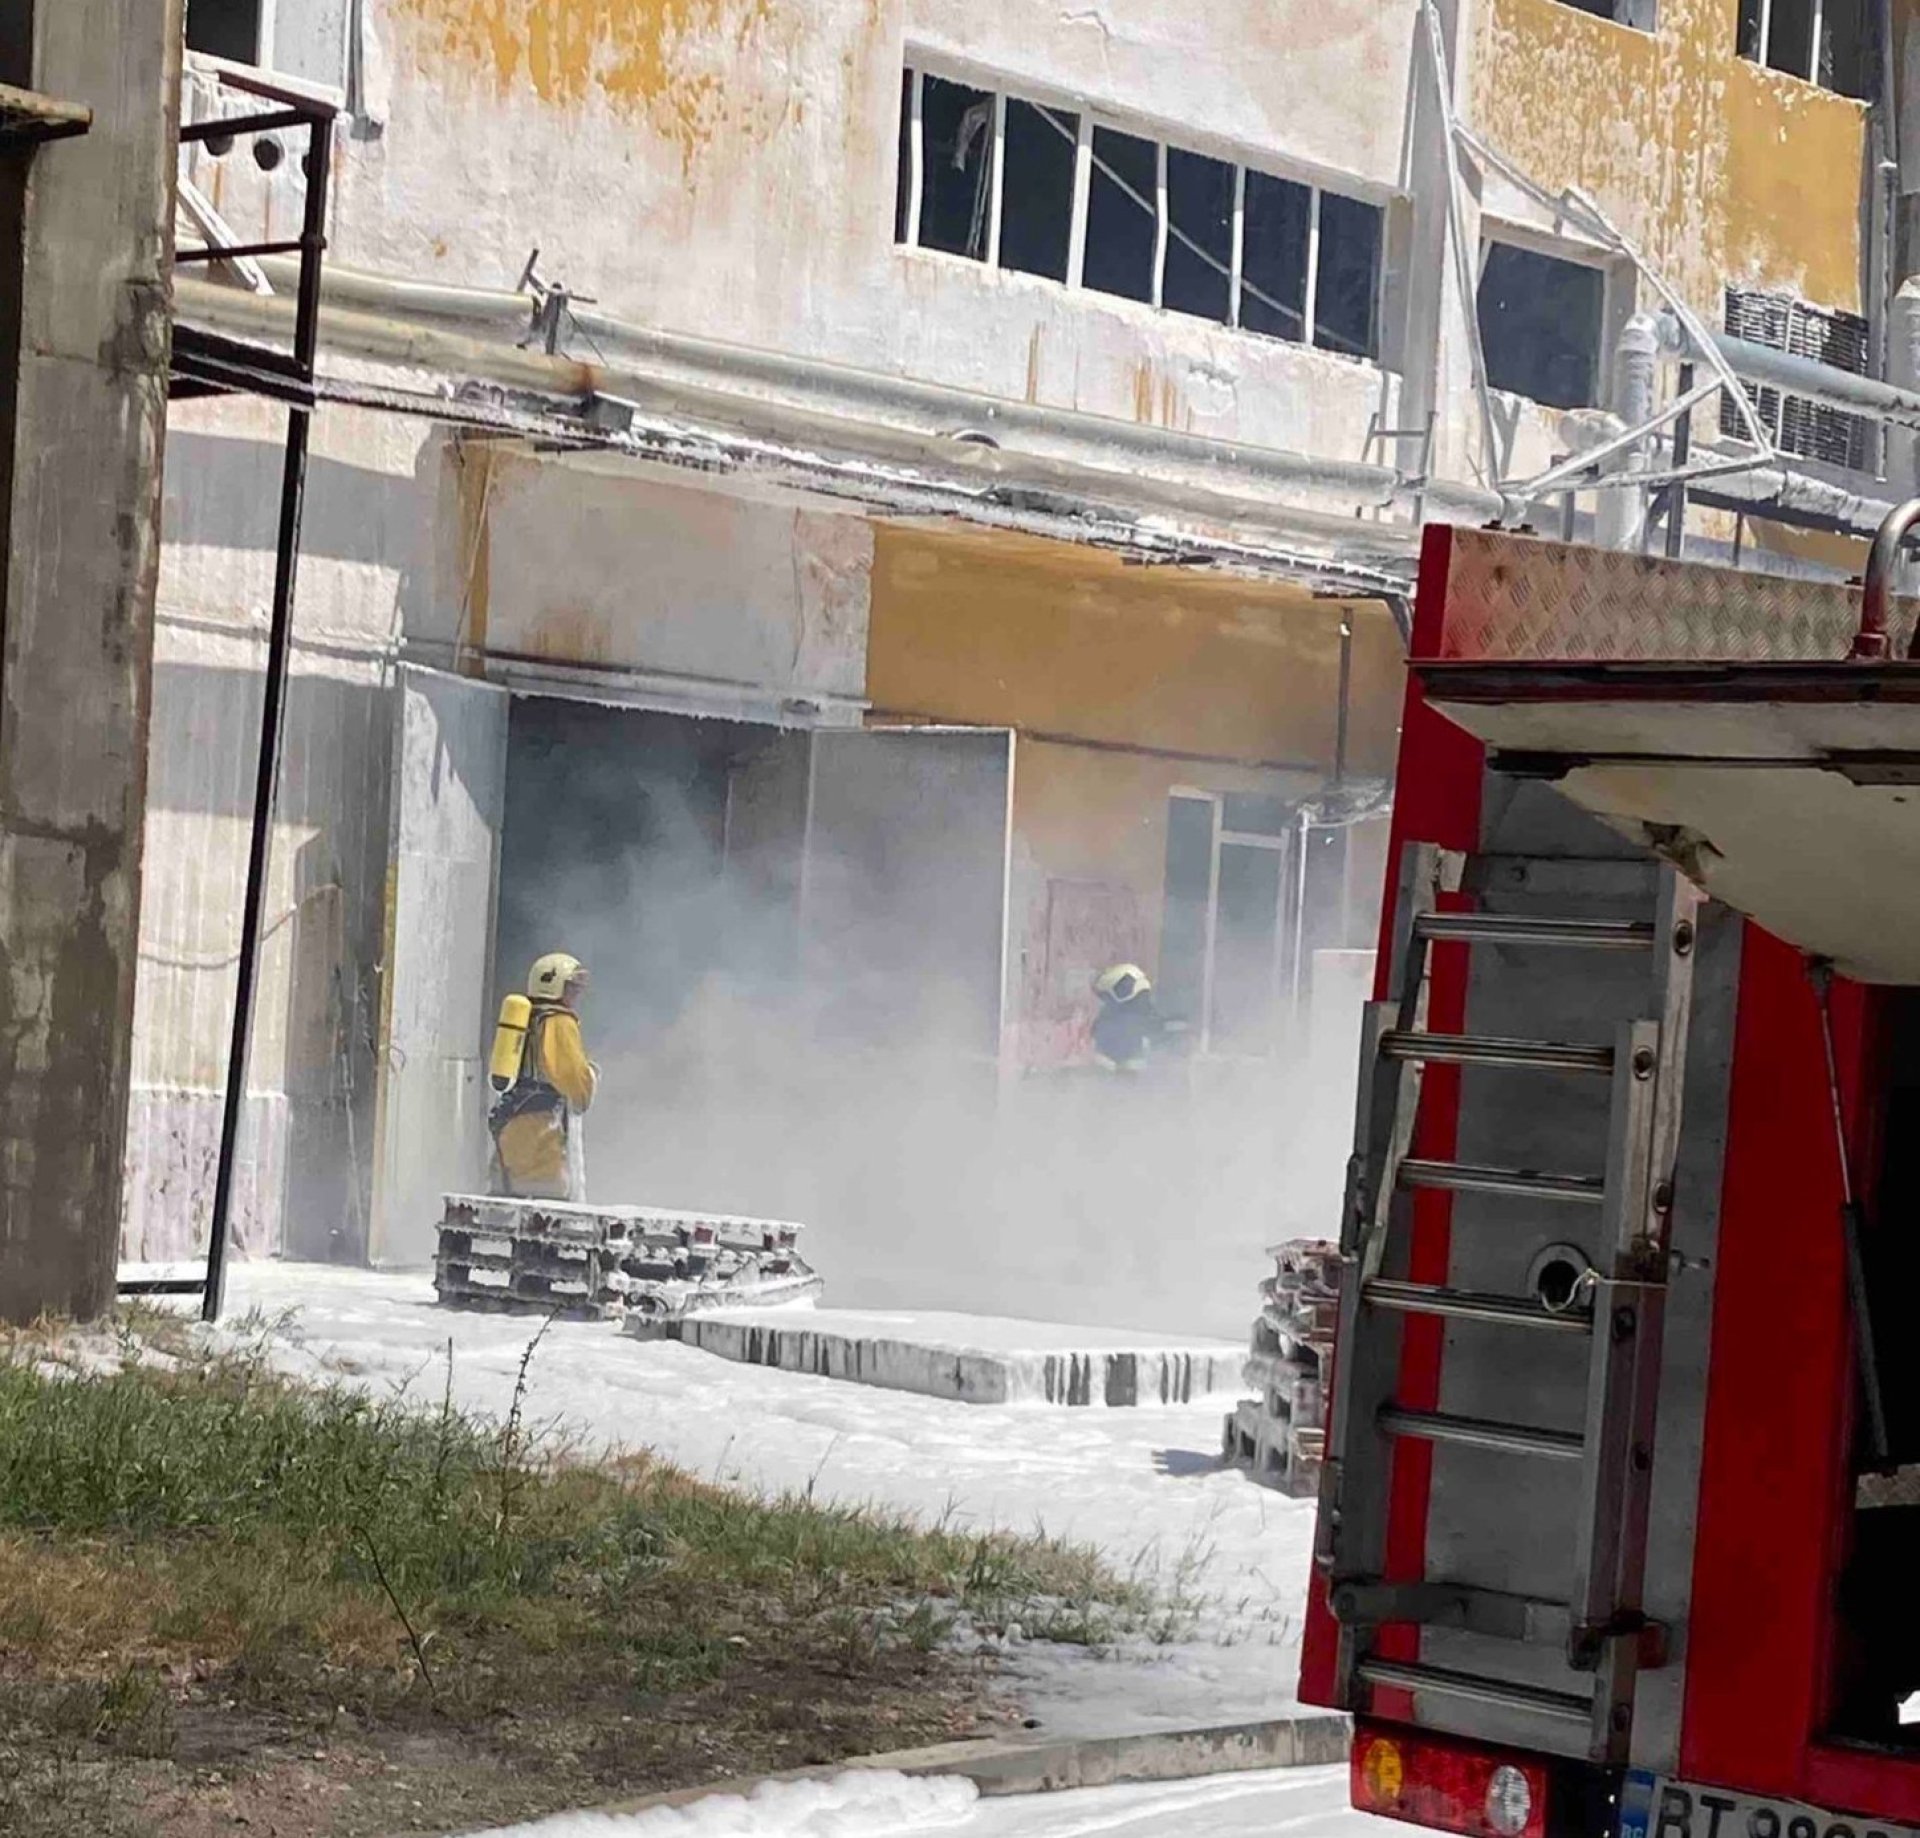 Има ранени пожарникари при взрива в Свищов, от цеха обясниха какво е станало